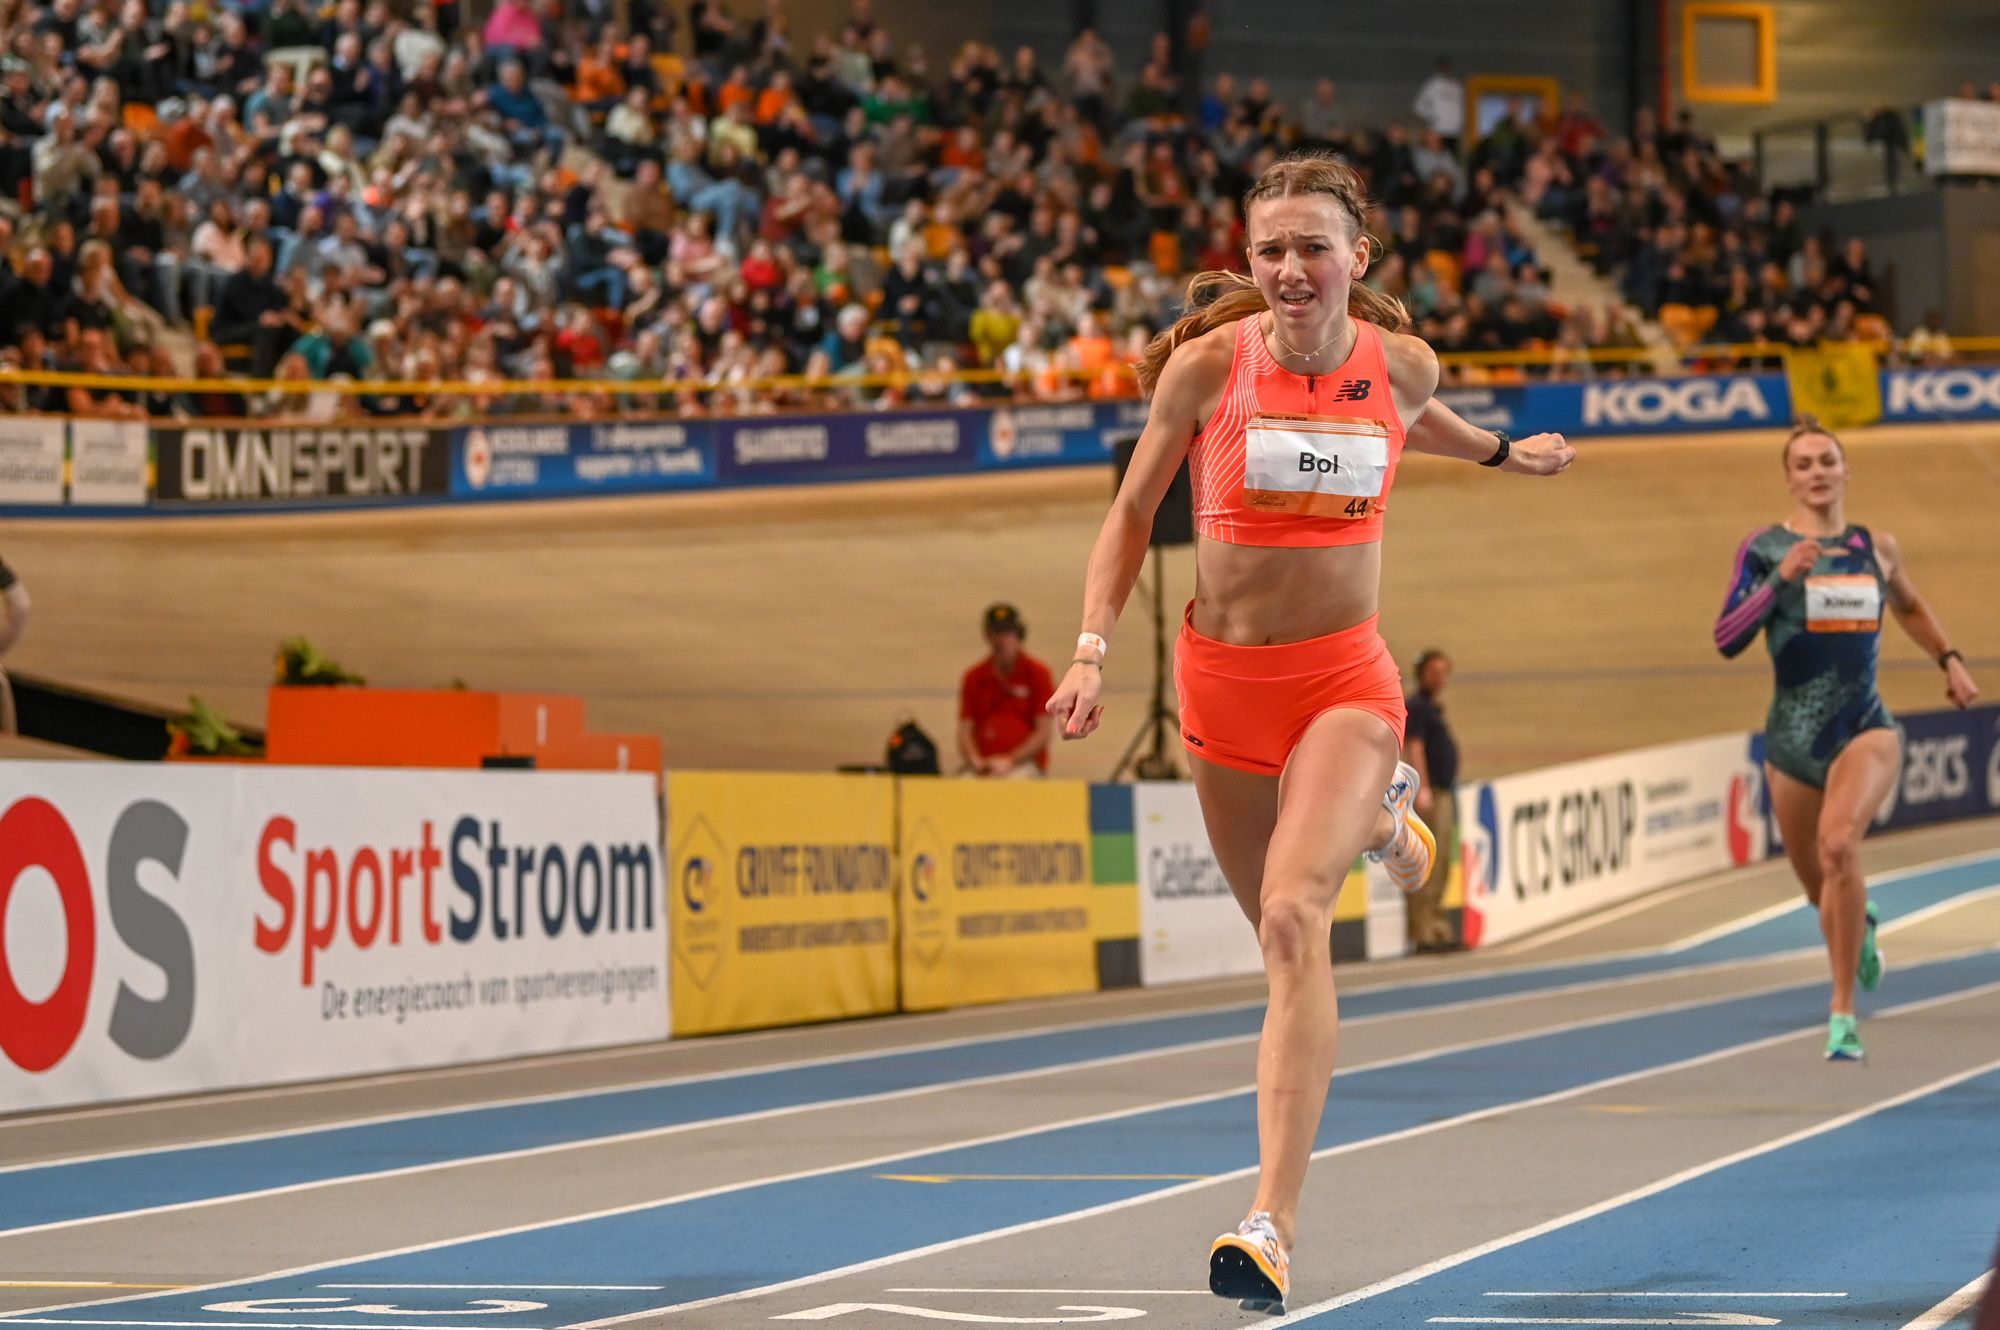 Femke Bol breaks the world indoor 400m record in Apeldoorn